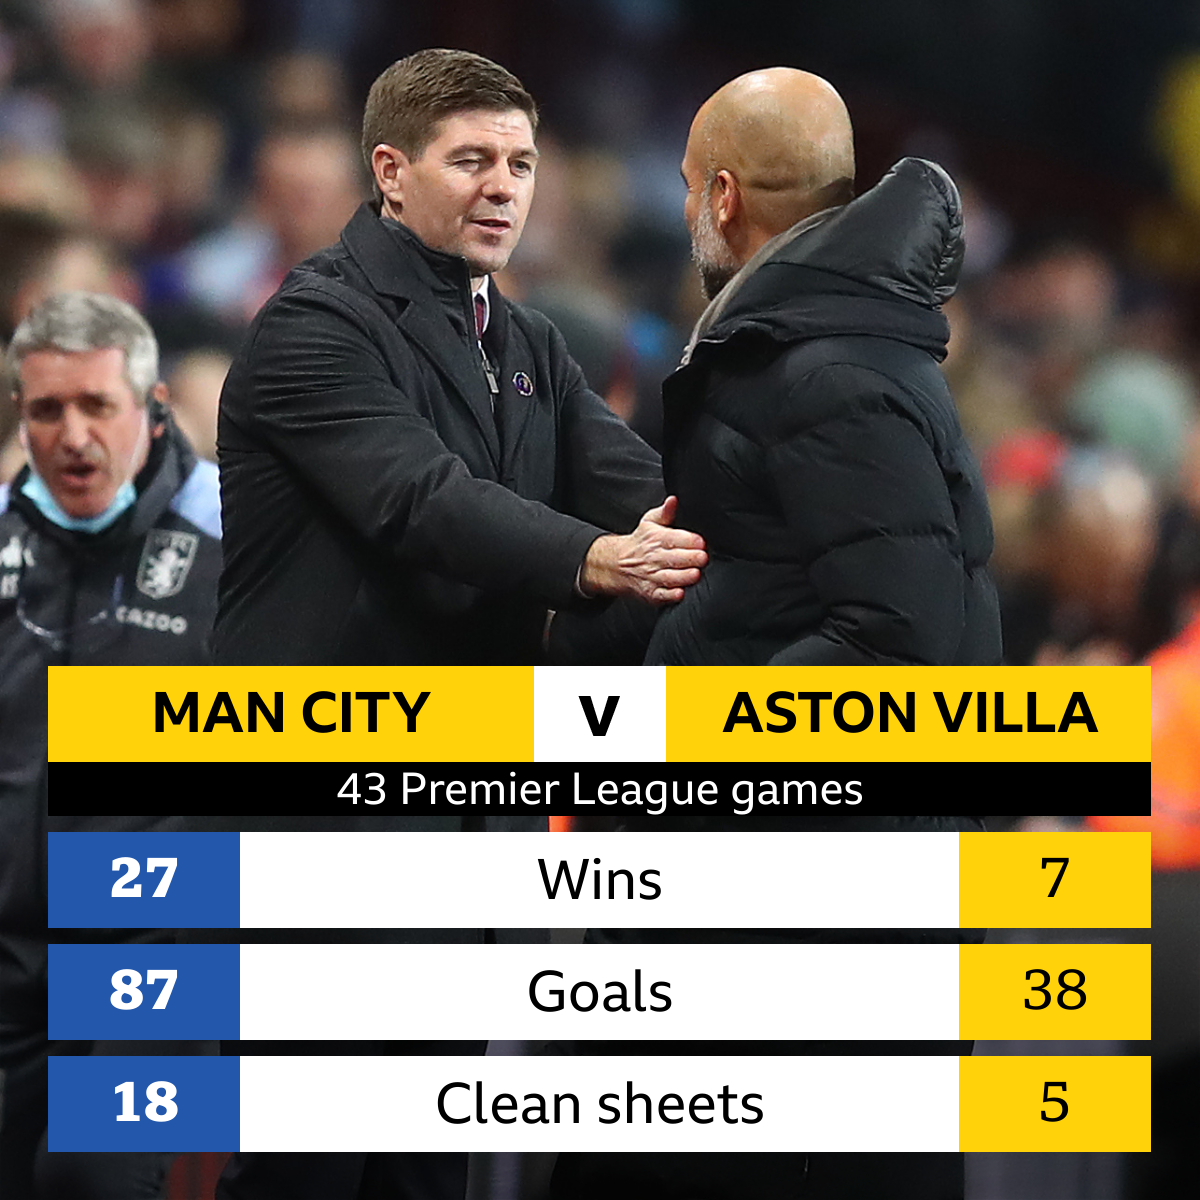 Man City v Aston Villa Head-to-head record